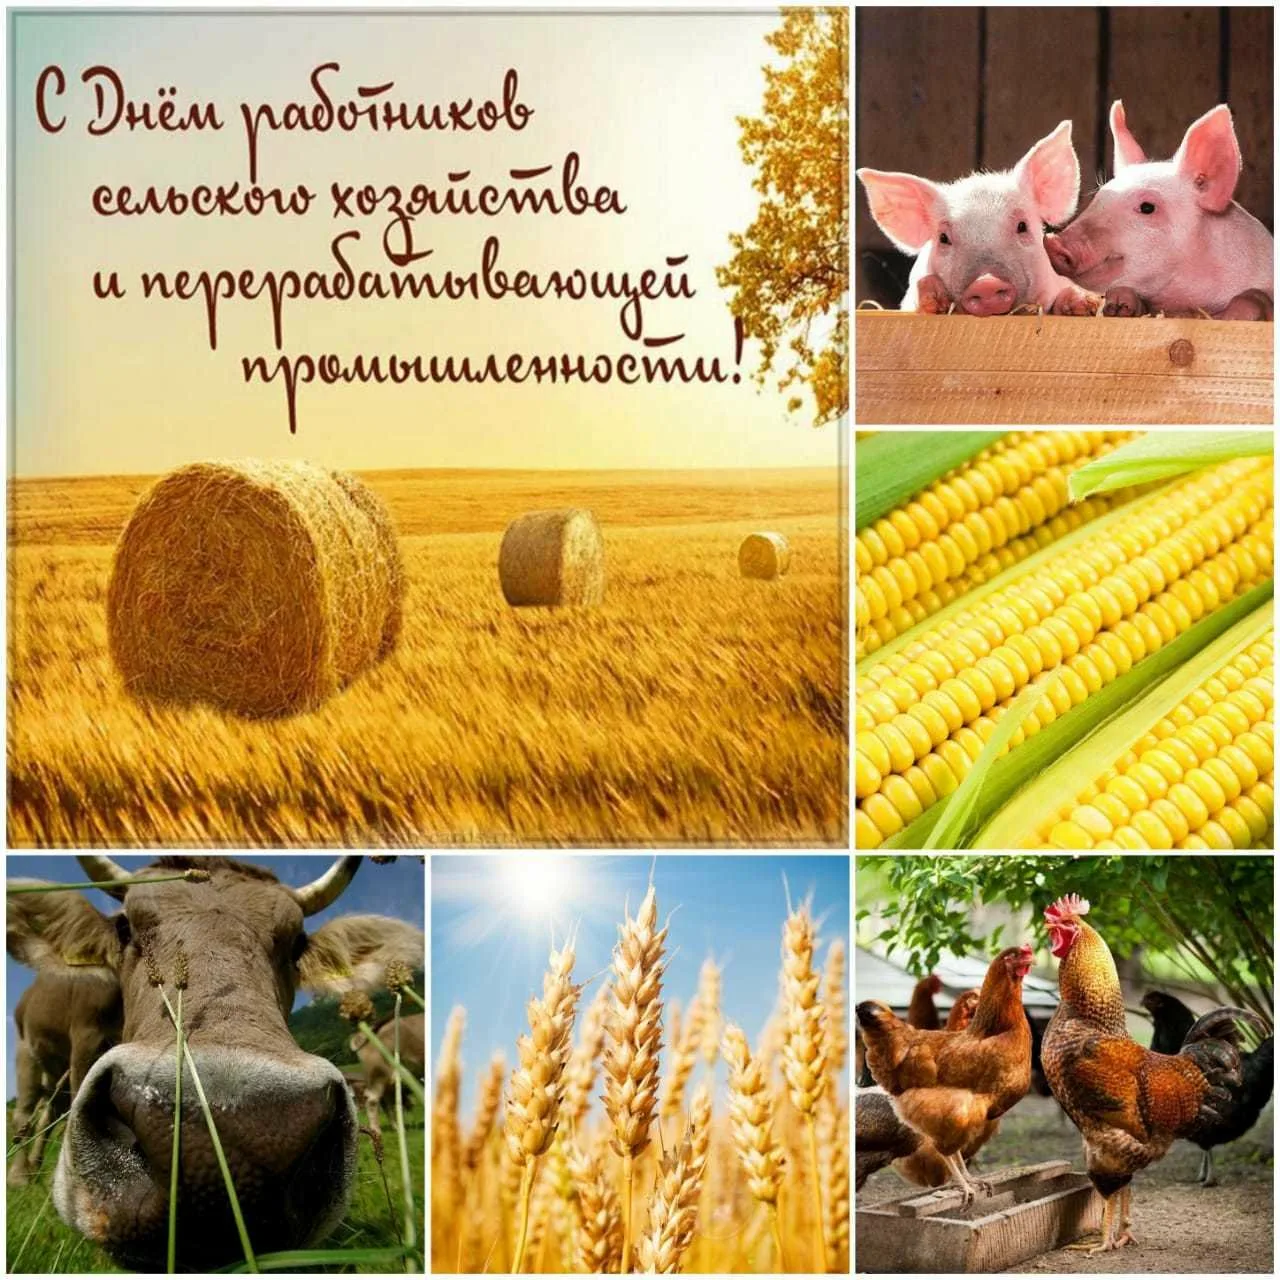 Фото Поздравления с днем работников сельского хозяйства Украины #47